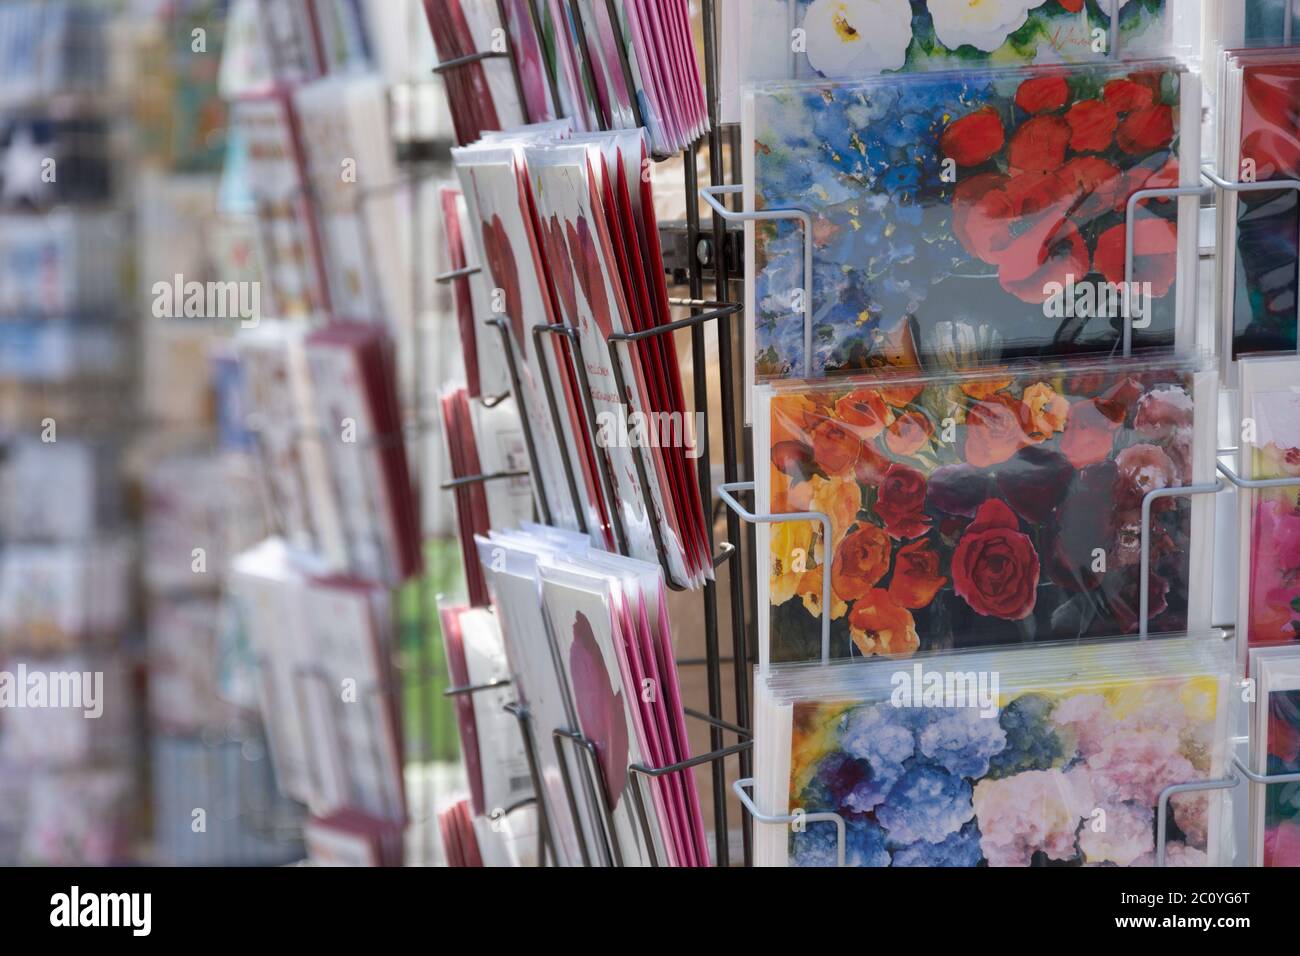 postales coloridas en un puesto de recuerdo Foto de stock